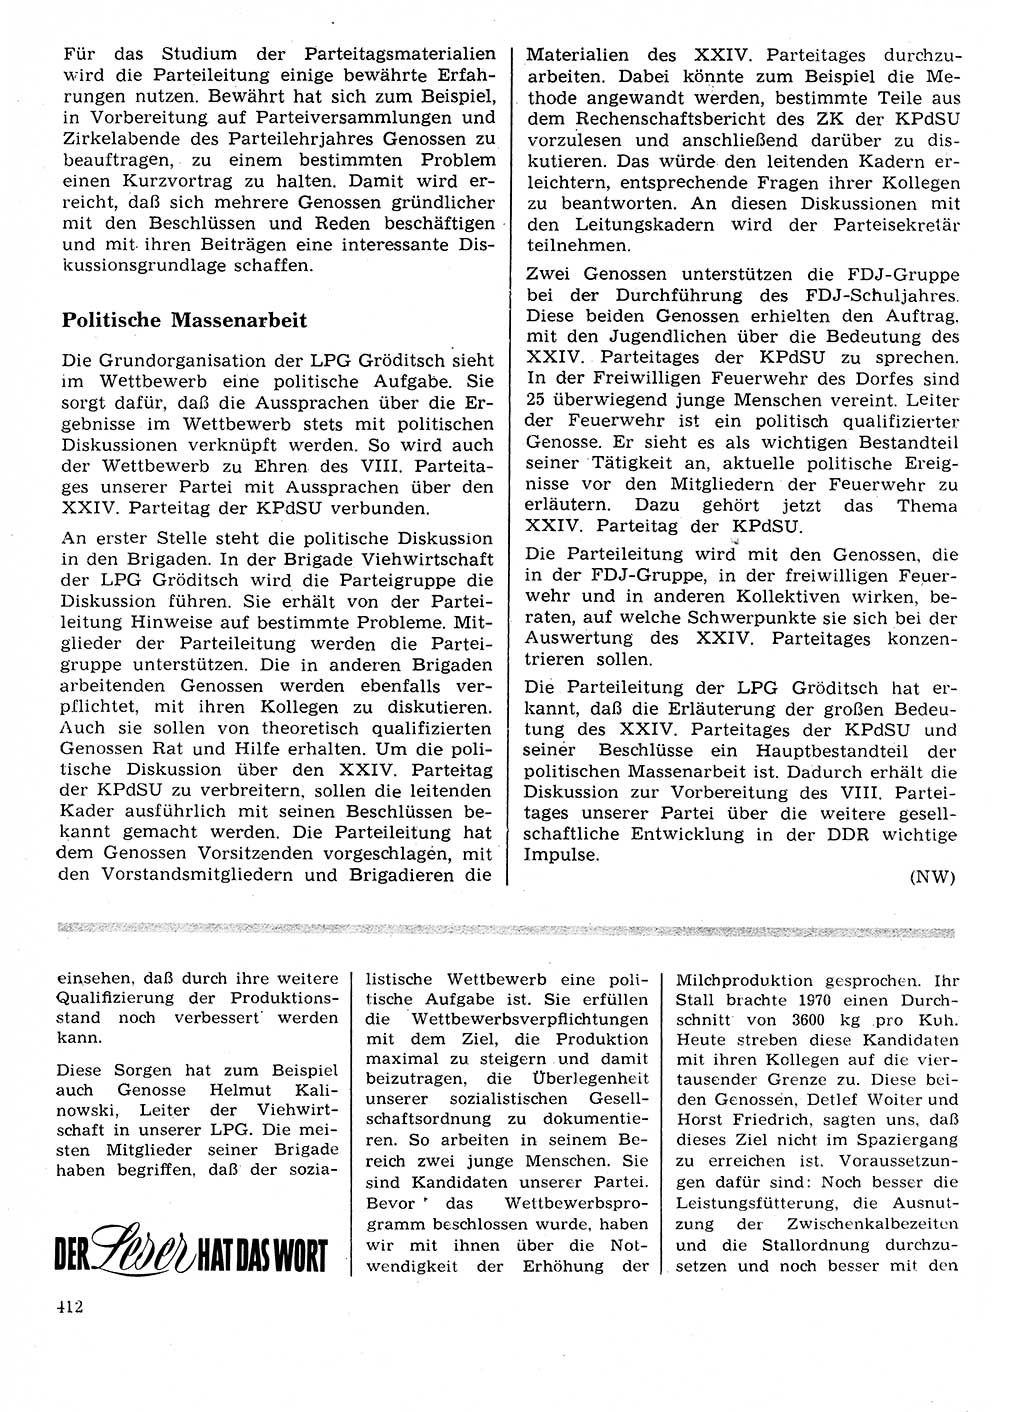 Neuer Weg (NW), Organ des Zentralkomitees (ZK) der SED (Sozialistische Einheitspartei Deutschlands) für Fragen des Parteilebens, 26. Jahrgang [Deutsche Demokratische Republik (DDR)] 1971, Seite 412 (NW ZK SED DDR 1971, S. 412)